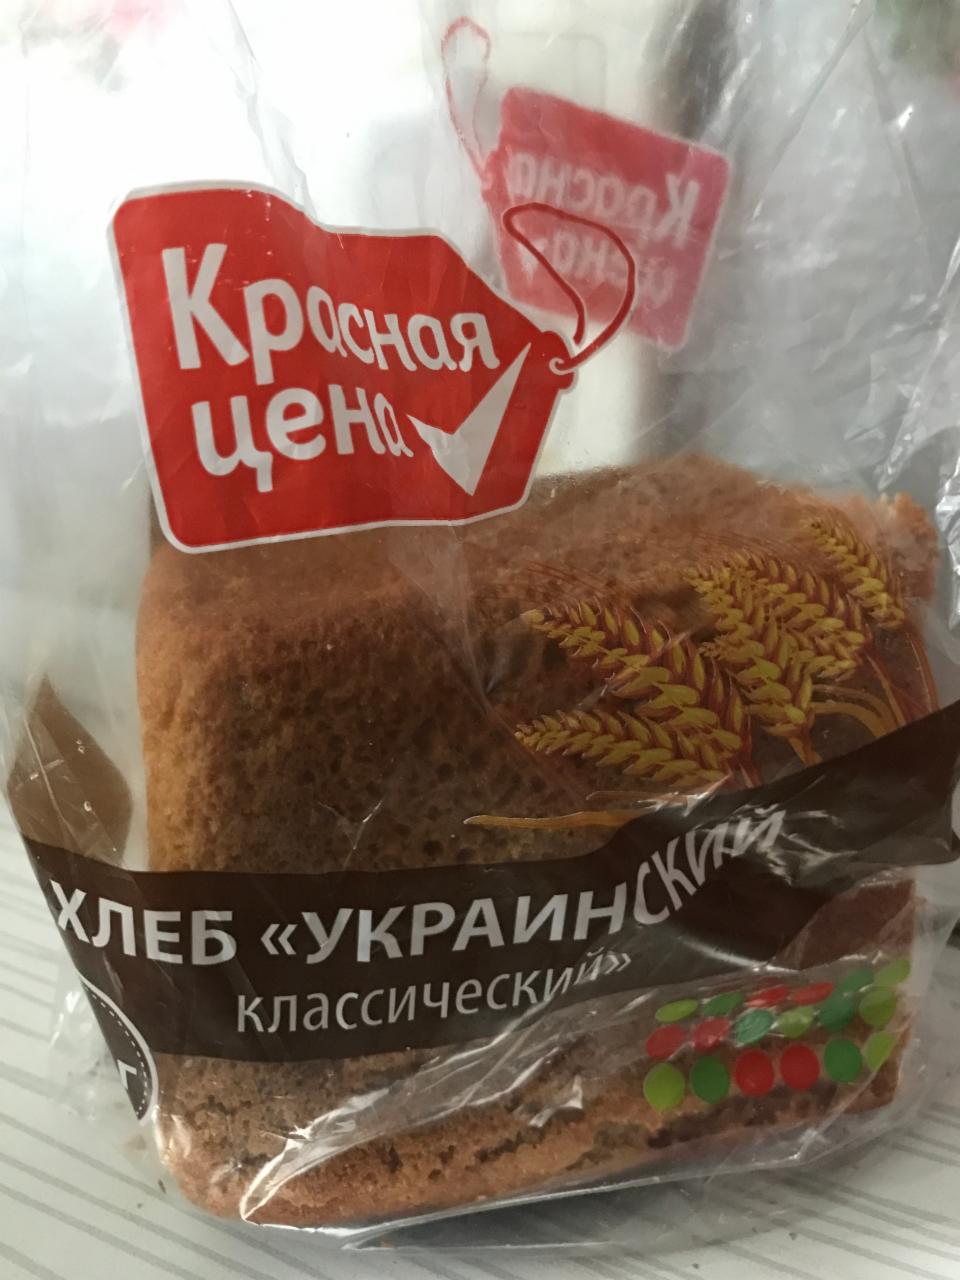 Фото - хлеб украинский классический Красная цена